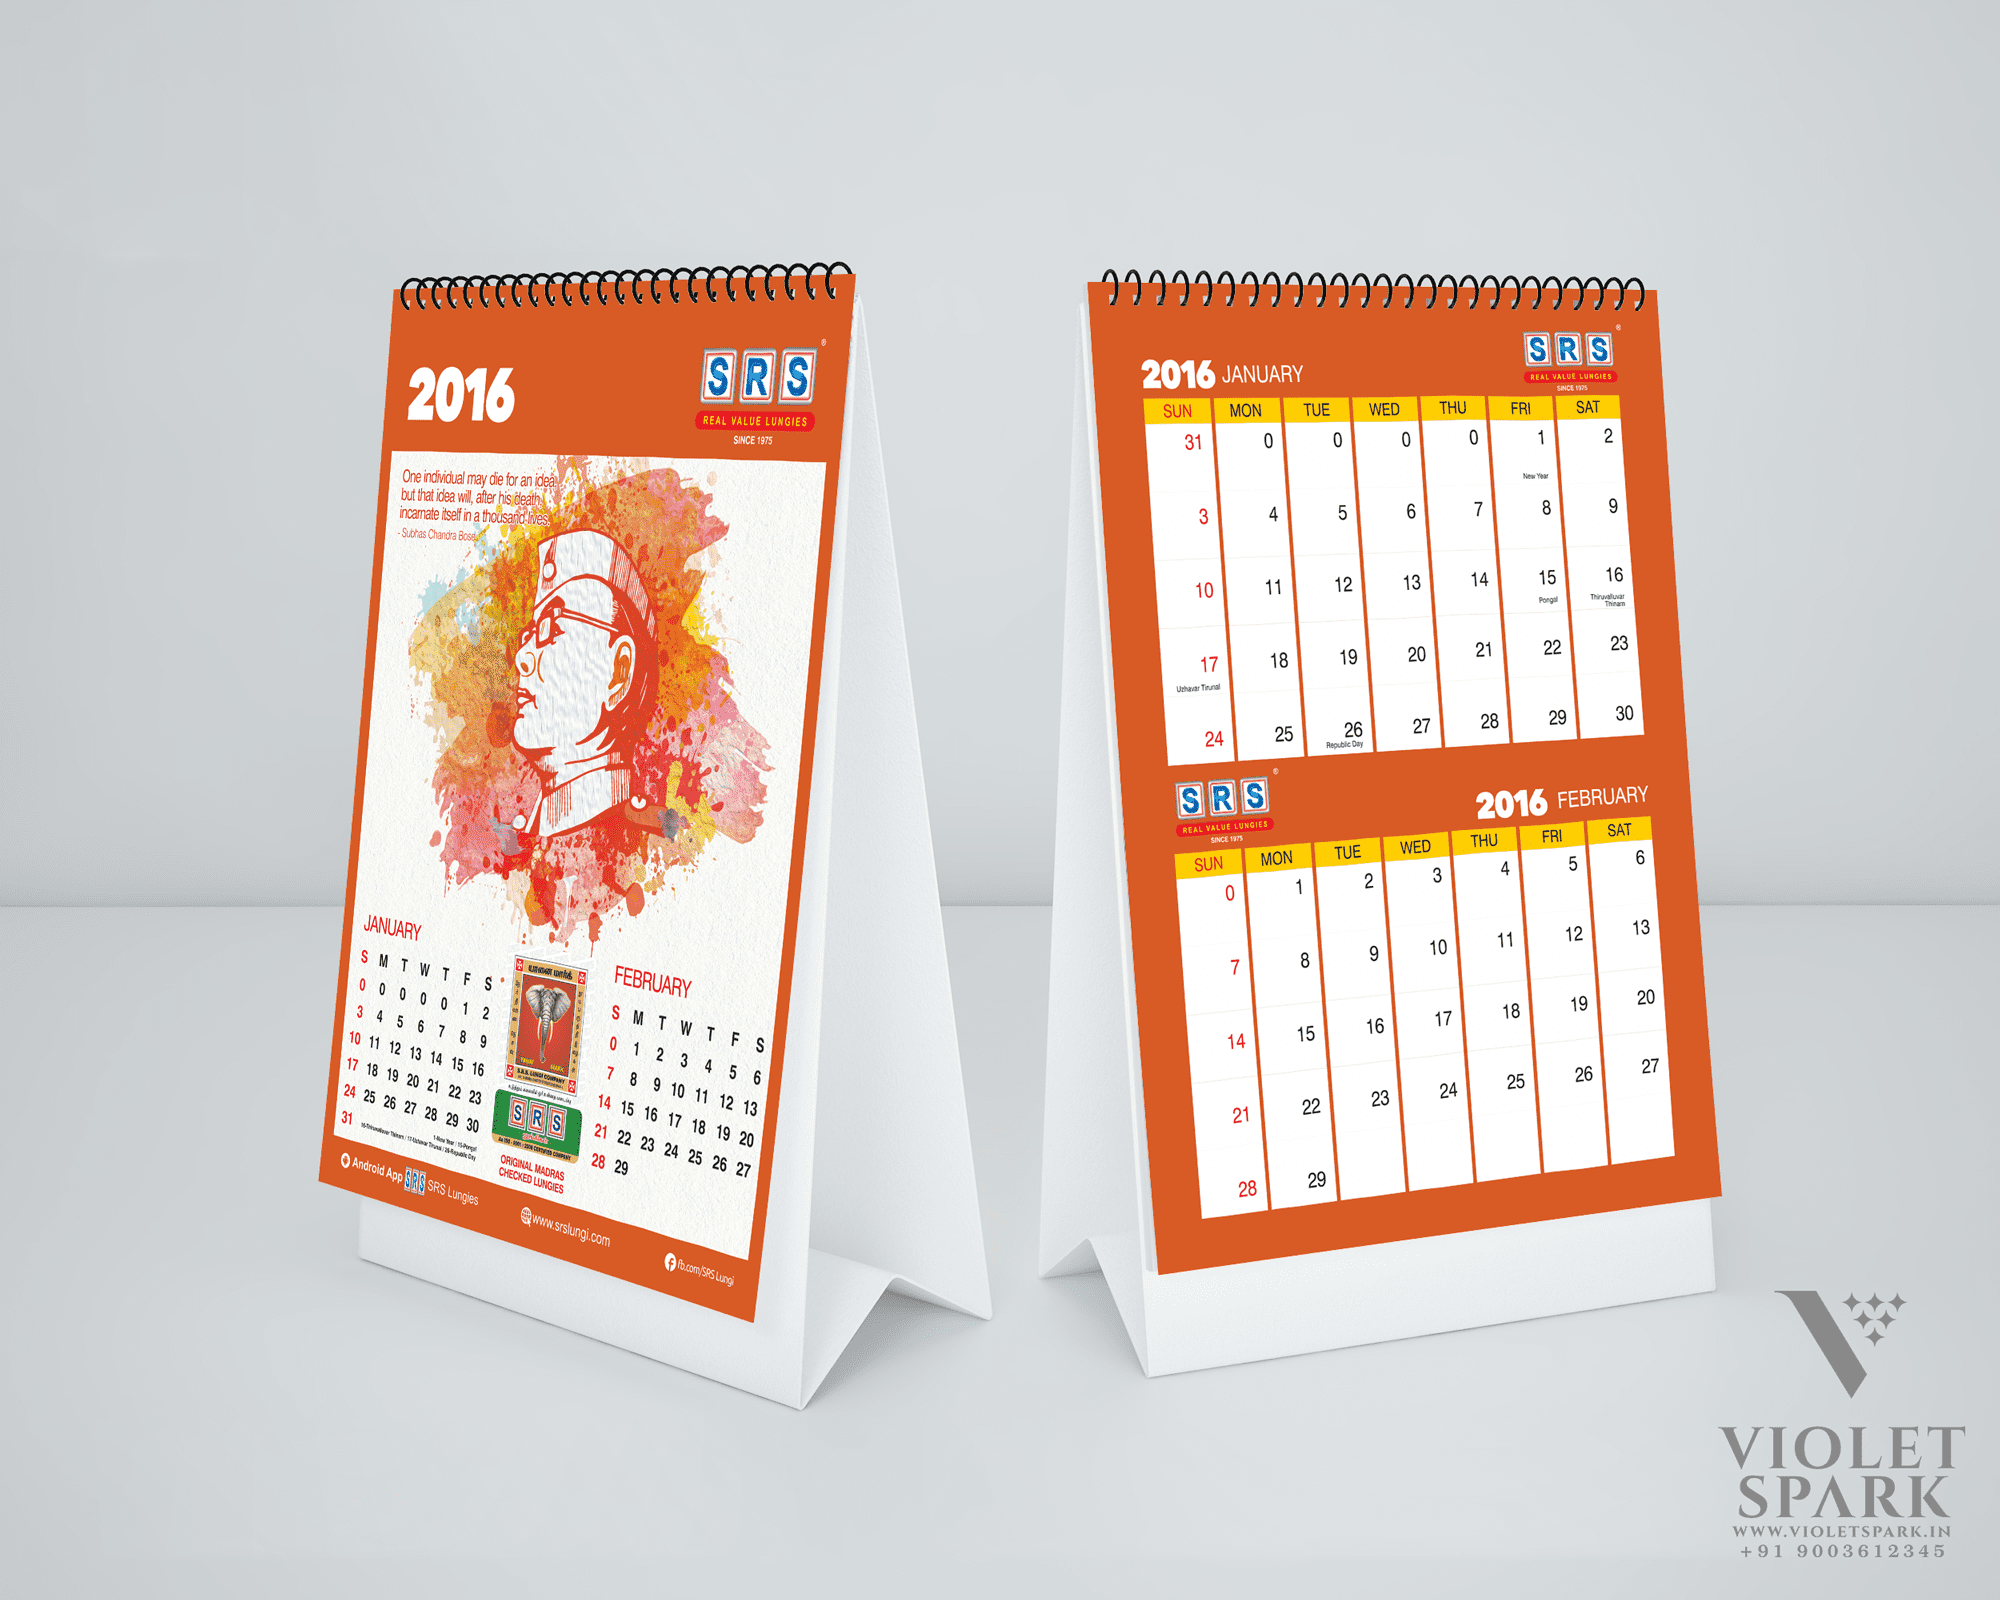 SRS Cotton Mills Calendar Design Branding Packaging Design Digital Marketing in Hyderabad by Violet Spark